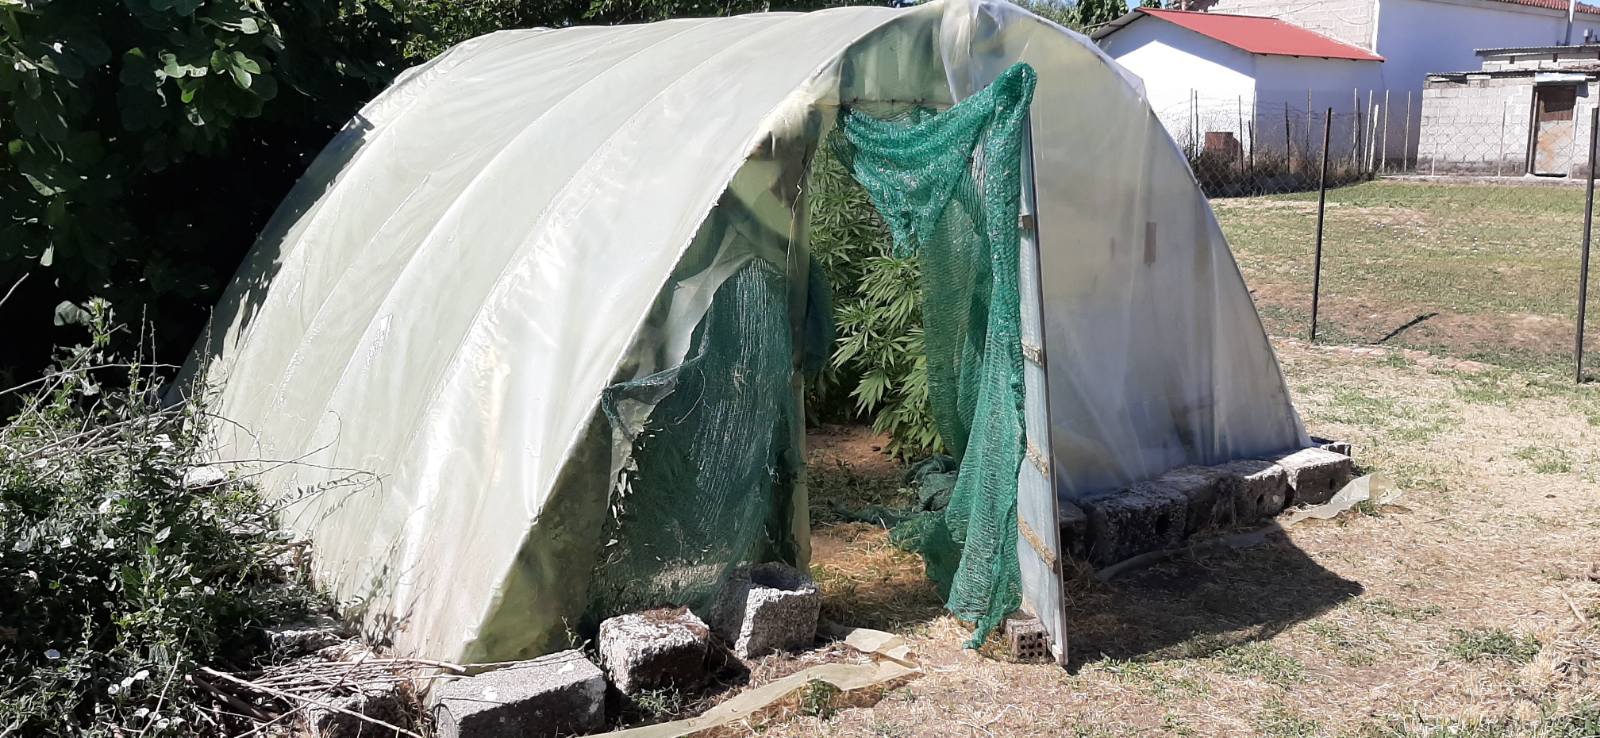 Τρίκαλα: Καλλιεργούσε κάνναβη σε αυτοσχέδιο θερμοκήπιο - Δείτε φωτογραφίες